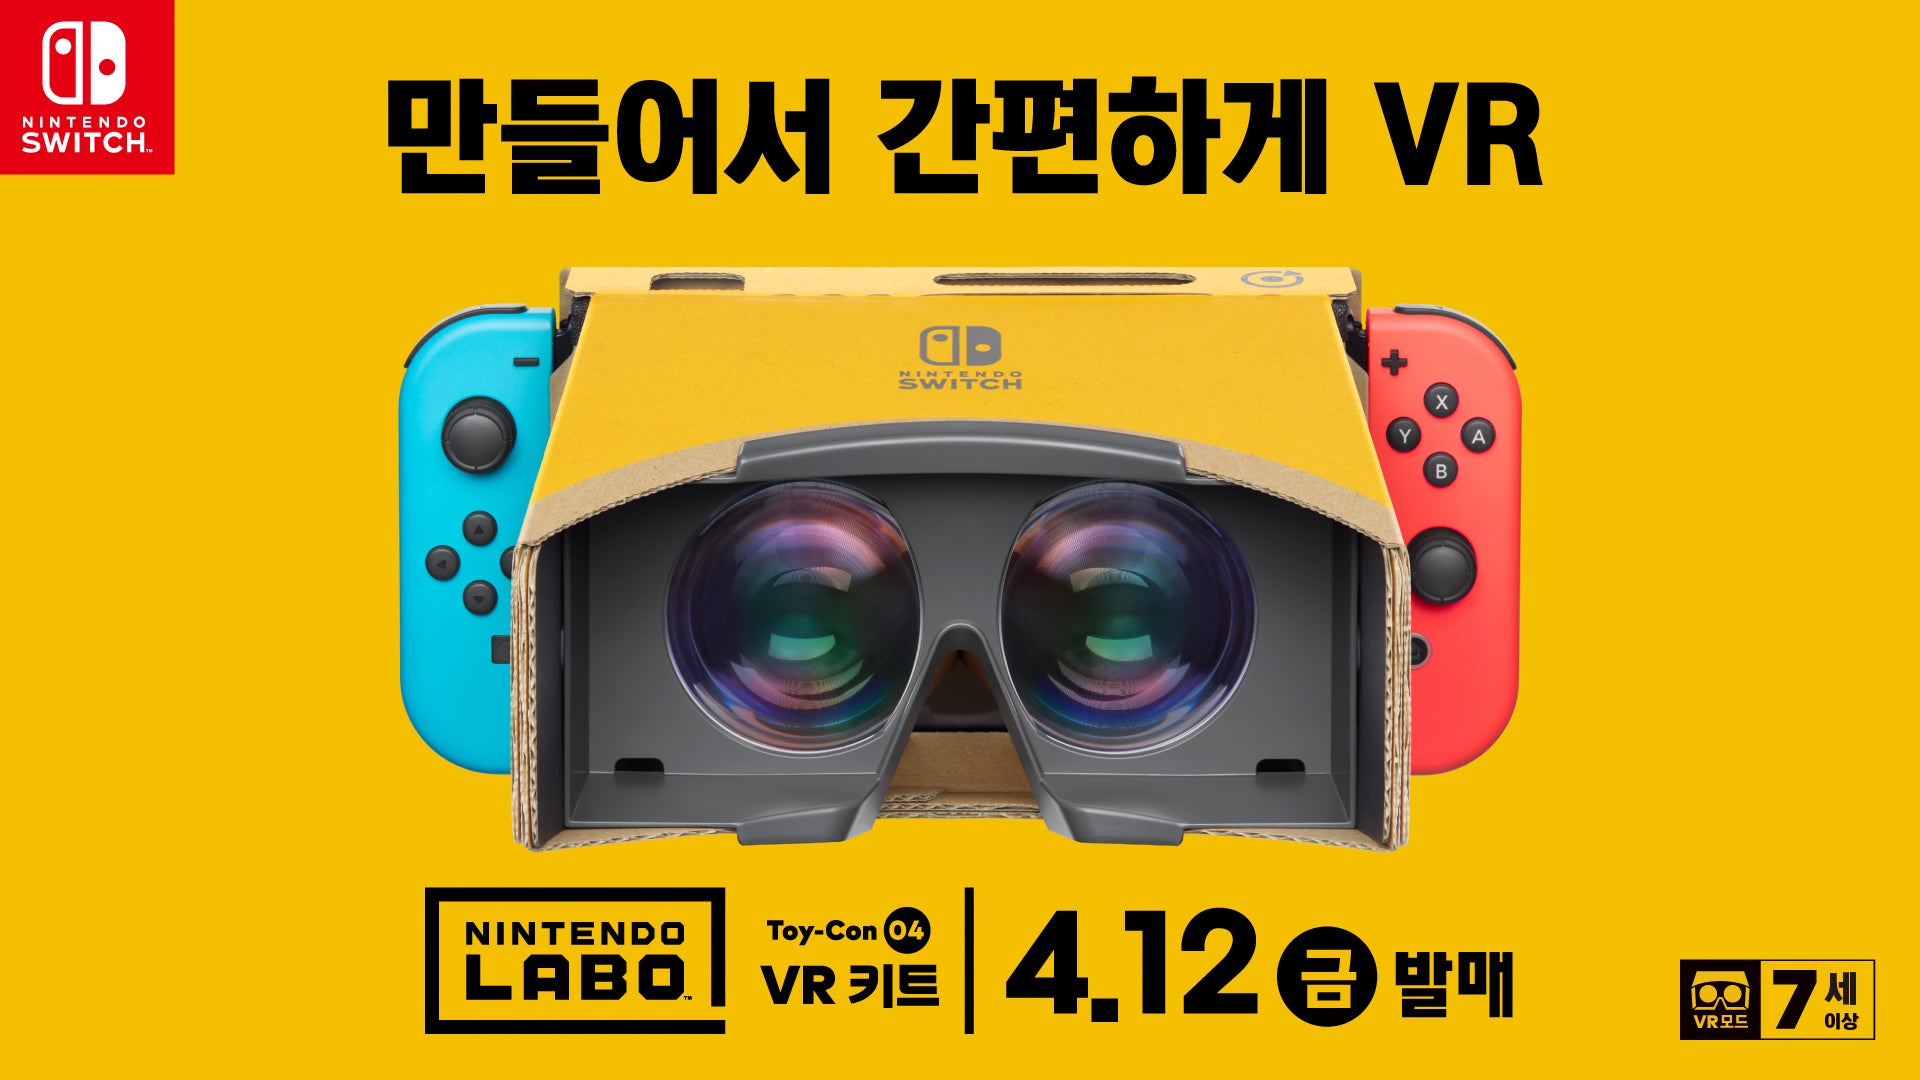 Nintendo Labo Toy-Con 04: VR 키트